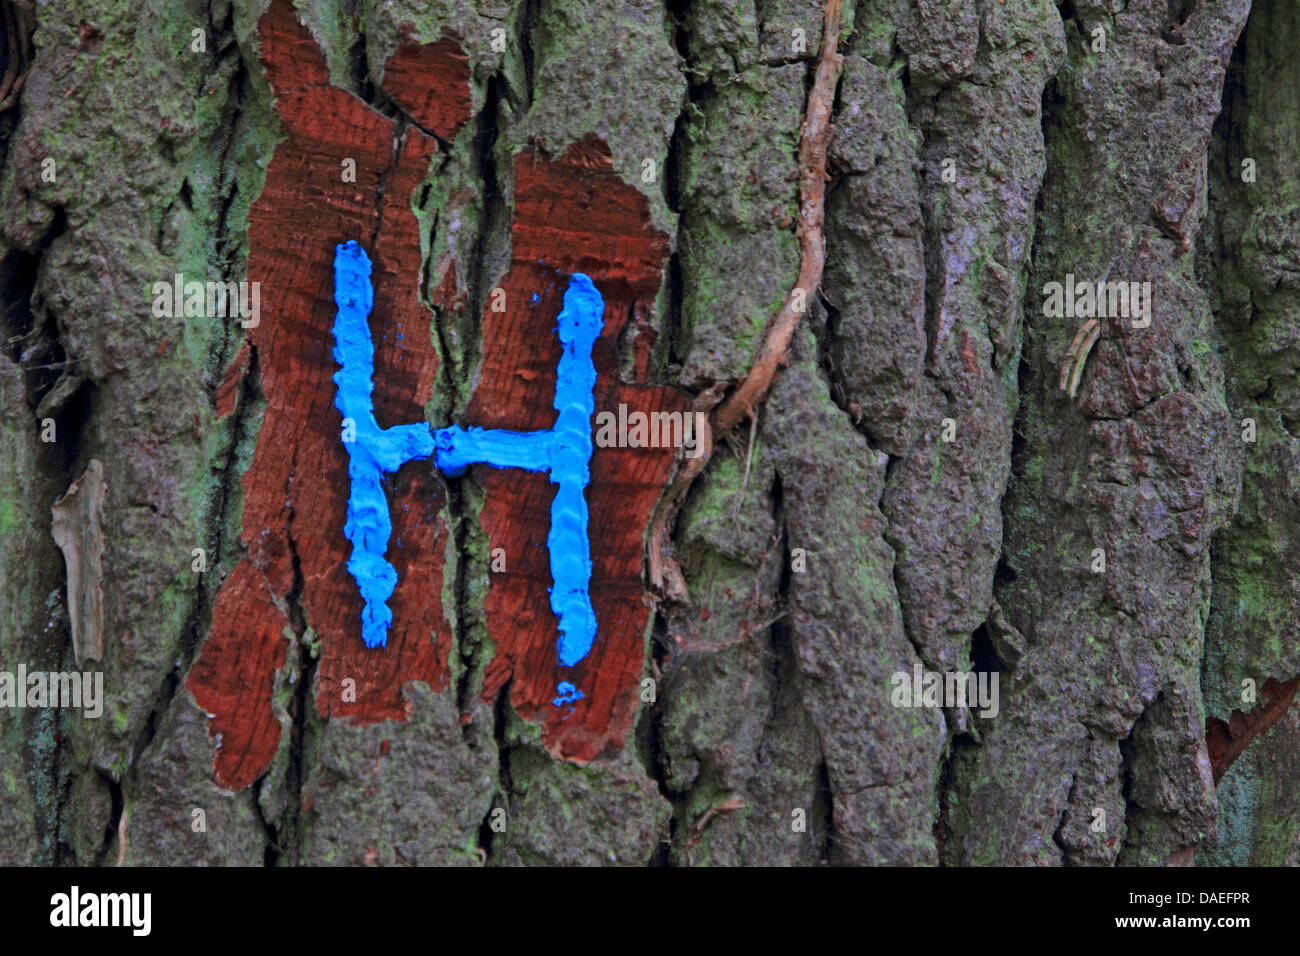 Carta de marcado en un árbol, Alemania Foto de stock